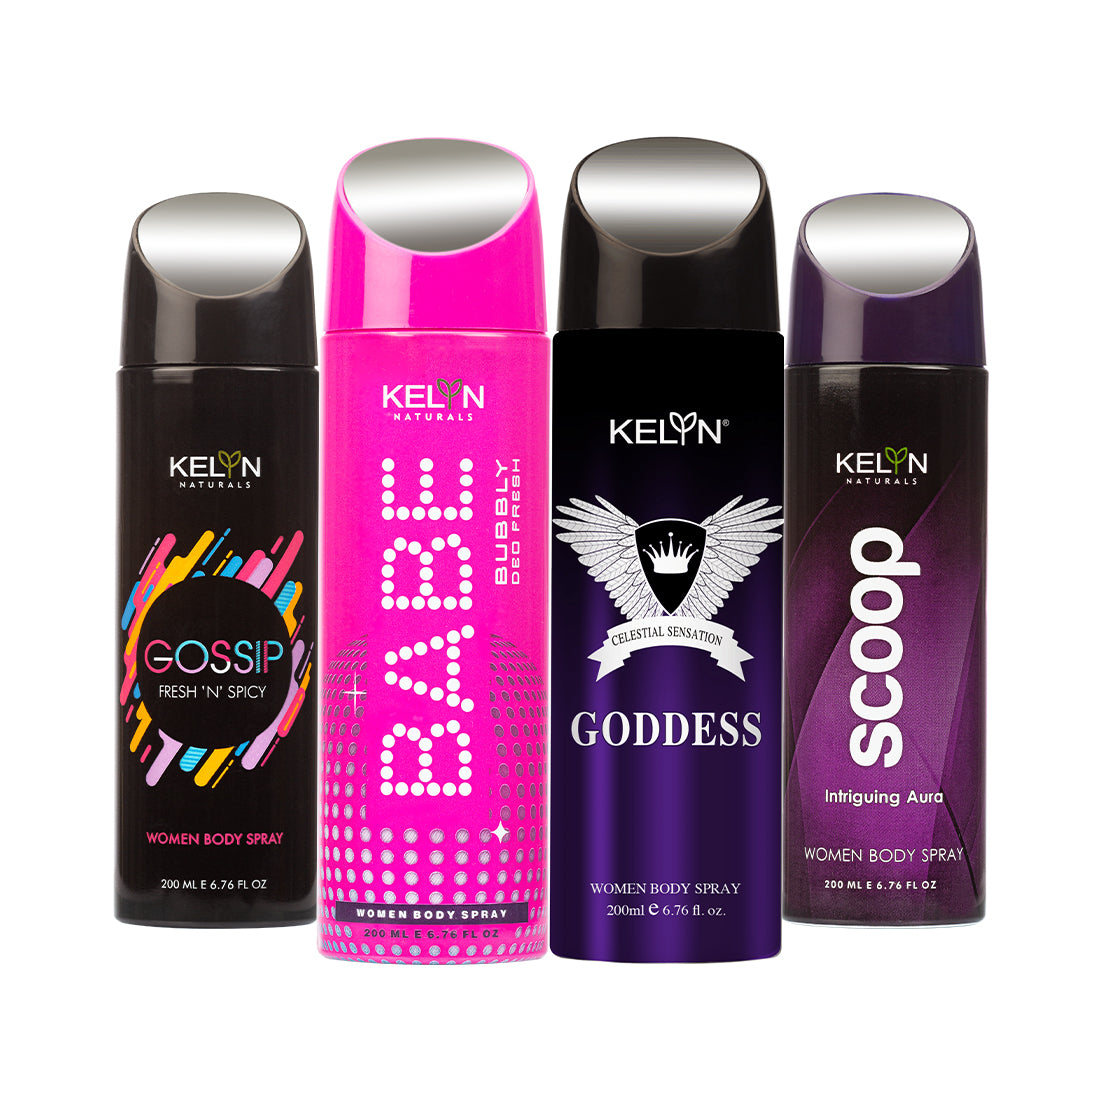 Gossip, Babe, Scoop, Goddess Deodorant for Women Body Spray (Pack of 4) 200 ml each